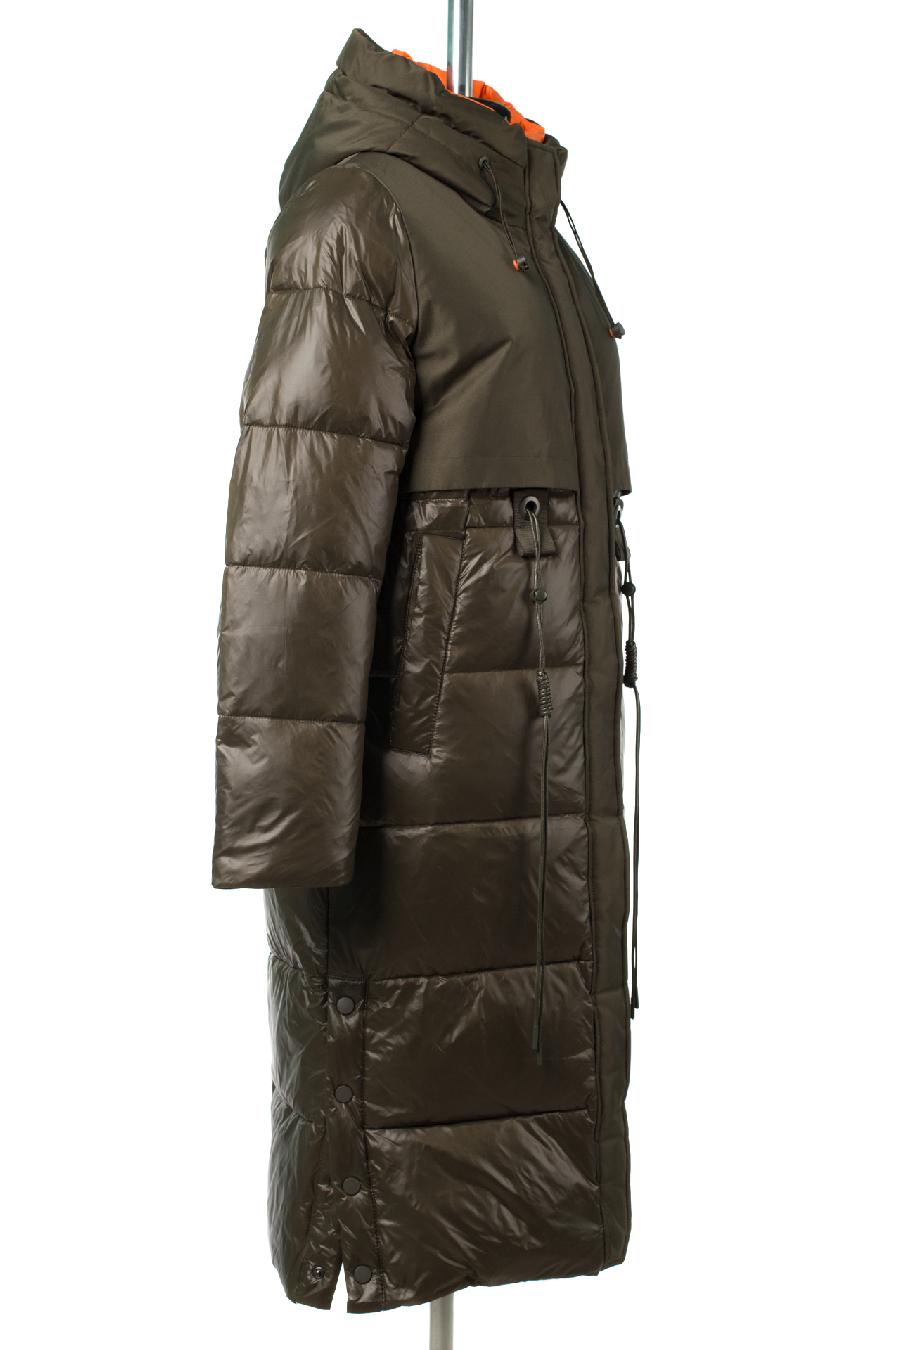 05-2052 Куртка женская зимняя (Биопух 300) Плащевка хаки